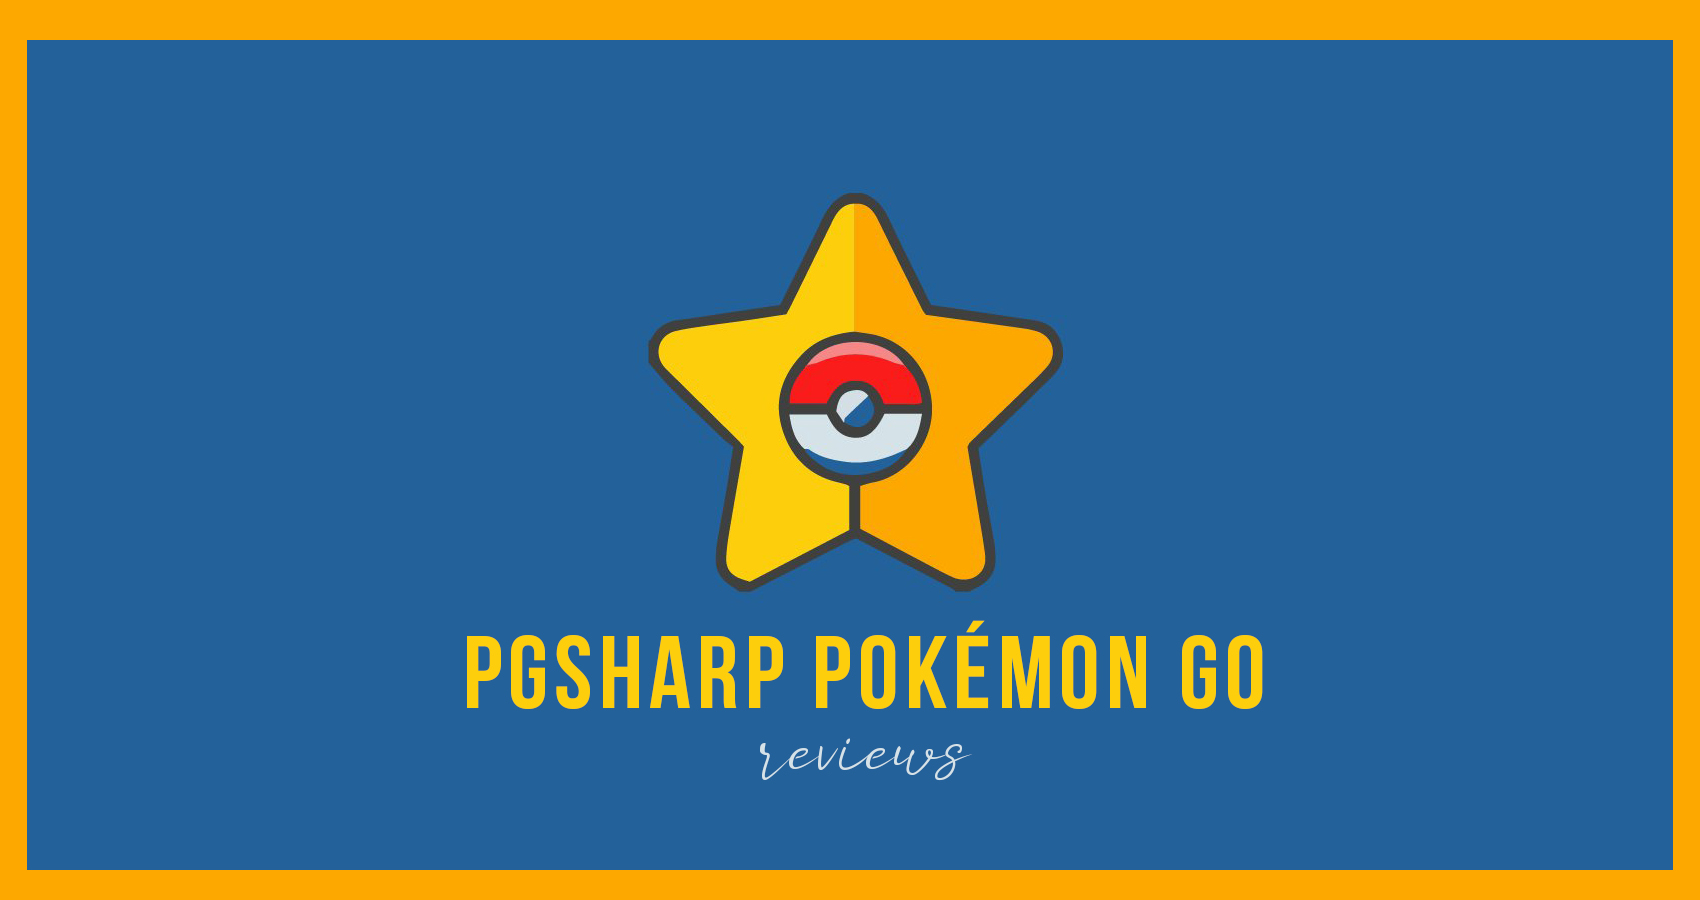 PGSharp Pokémon Go: ಅದು ಏನು, ಅದನ್ನು ಎಲ್ಲಿ ಡೌನ್‌ಲೋಡ್ ಮಾಡುವುದು ಮತ್ತು ಇನ್ನಷ್ಟು